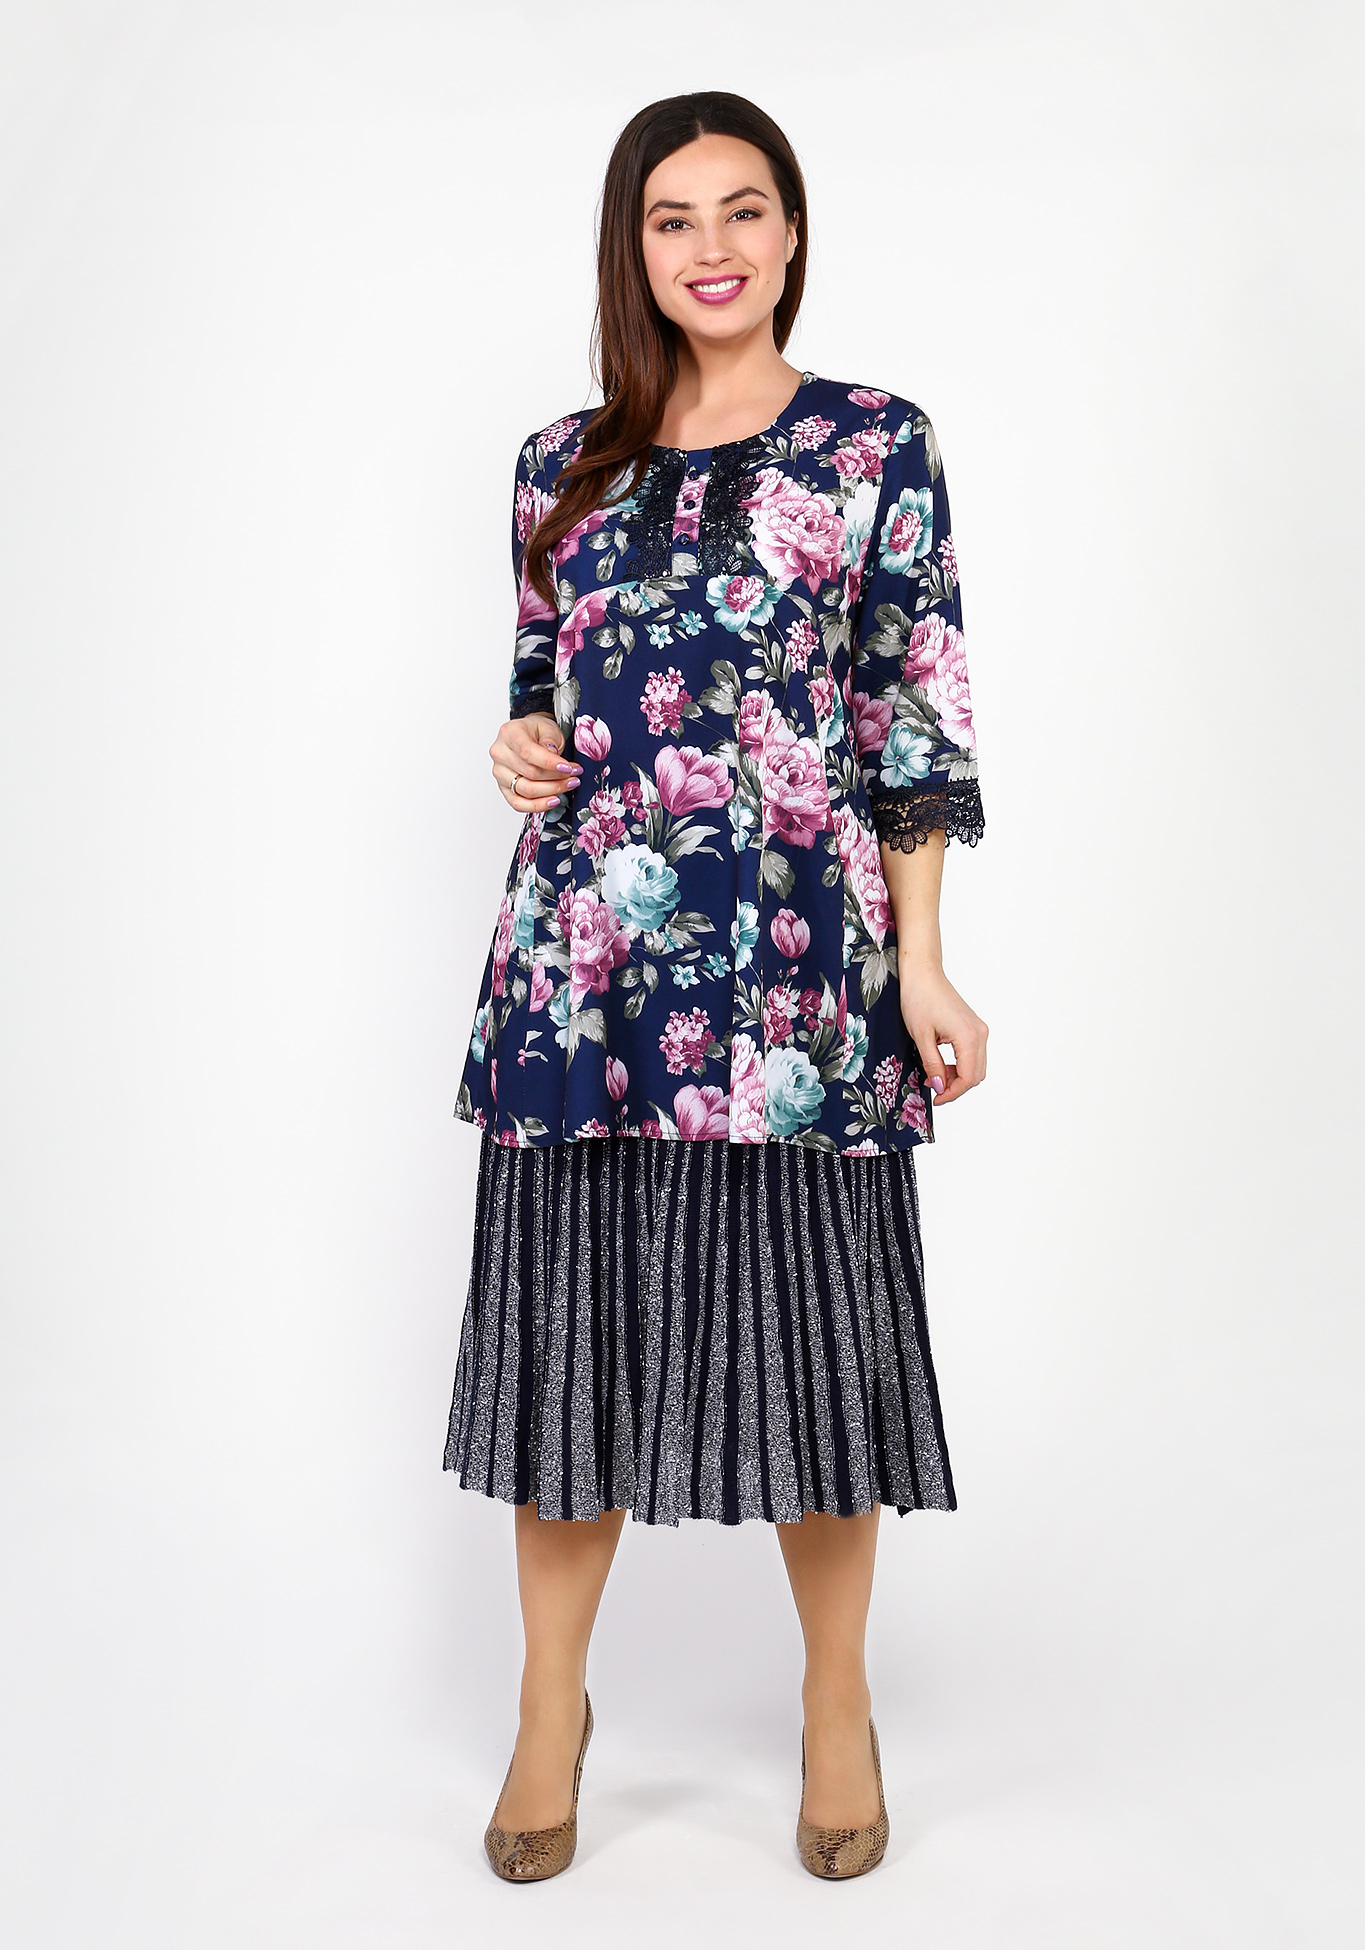 Блуза с цветочным принтом и отделкой кружевом Bianka Modeno, размер 48 - фото 1